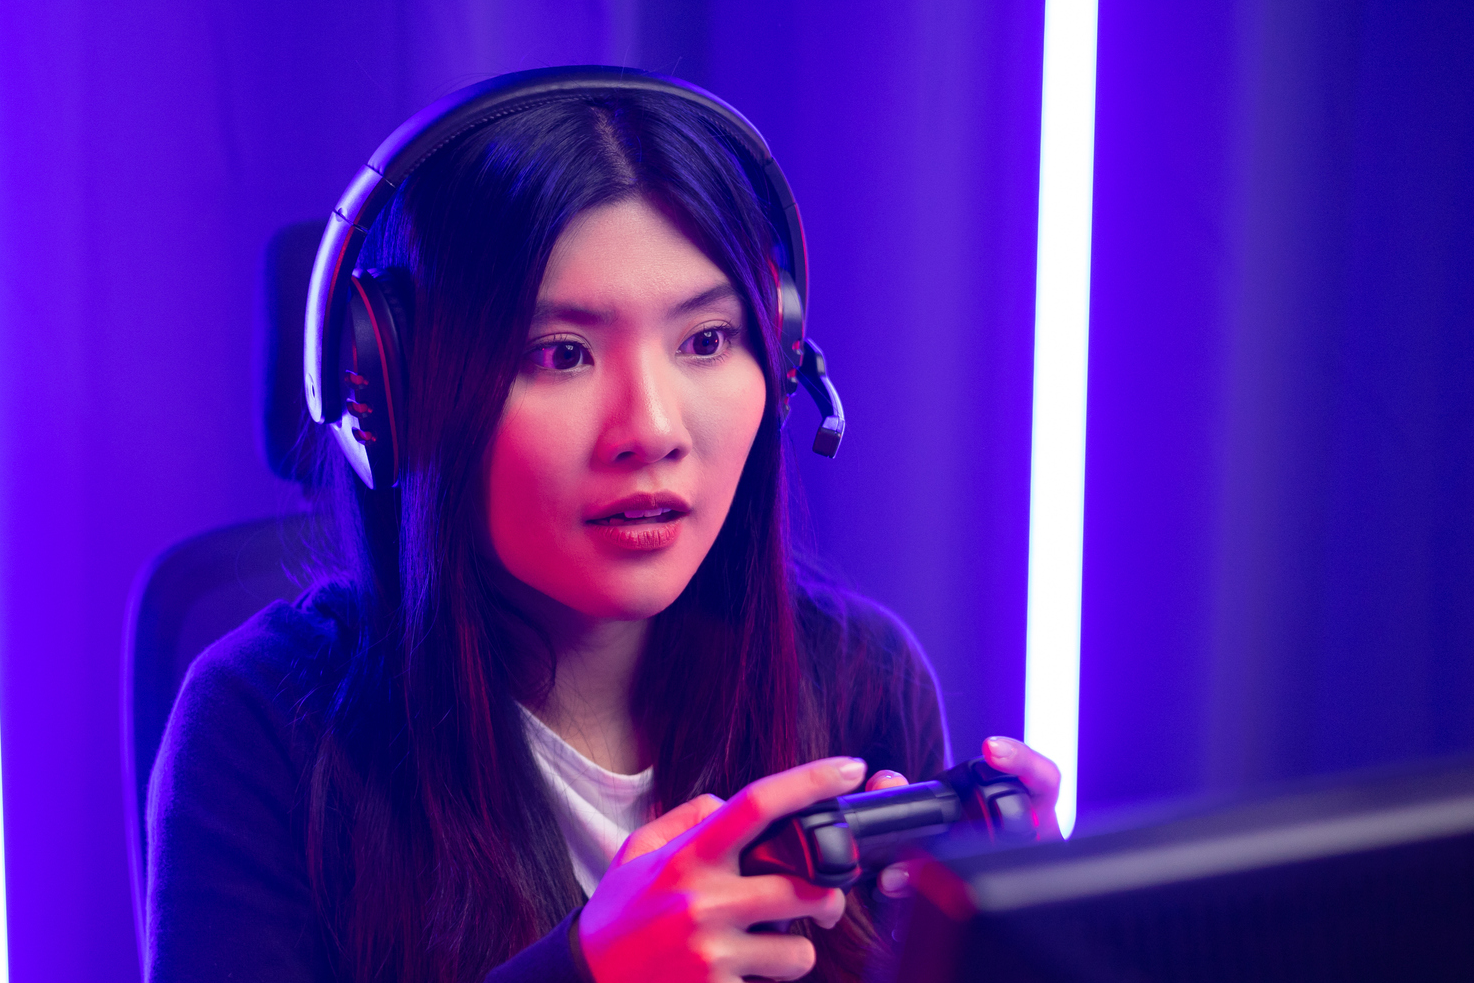 Kvinnelig streamer som spiller videospill foran en skjer med lilla og blå lys i bakgrunn.